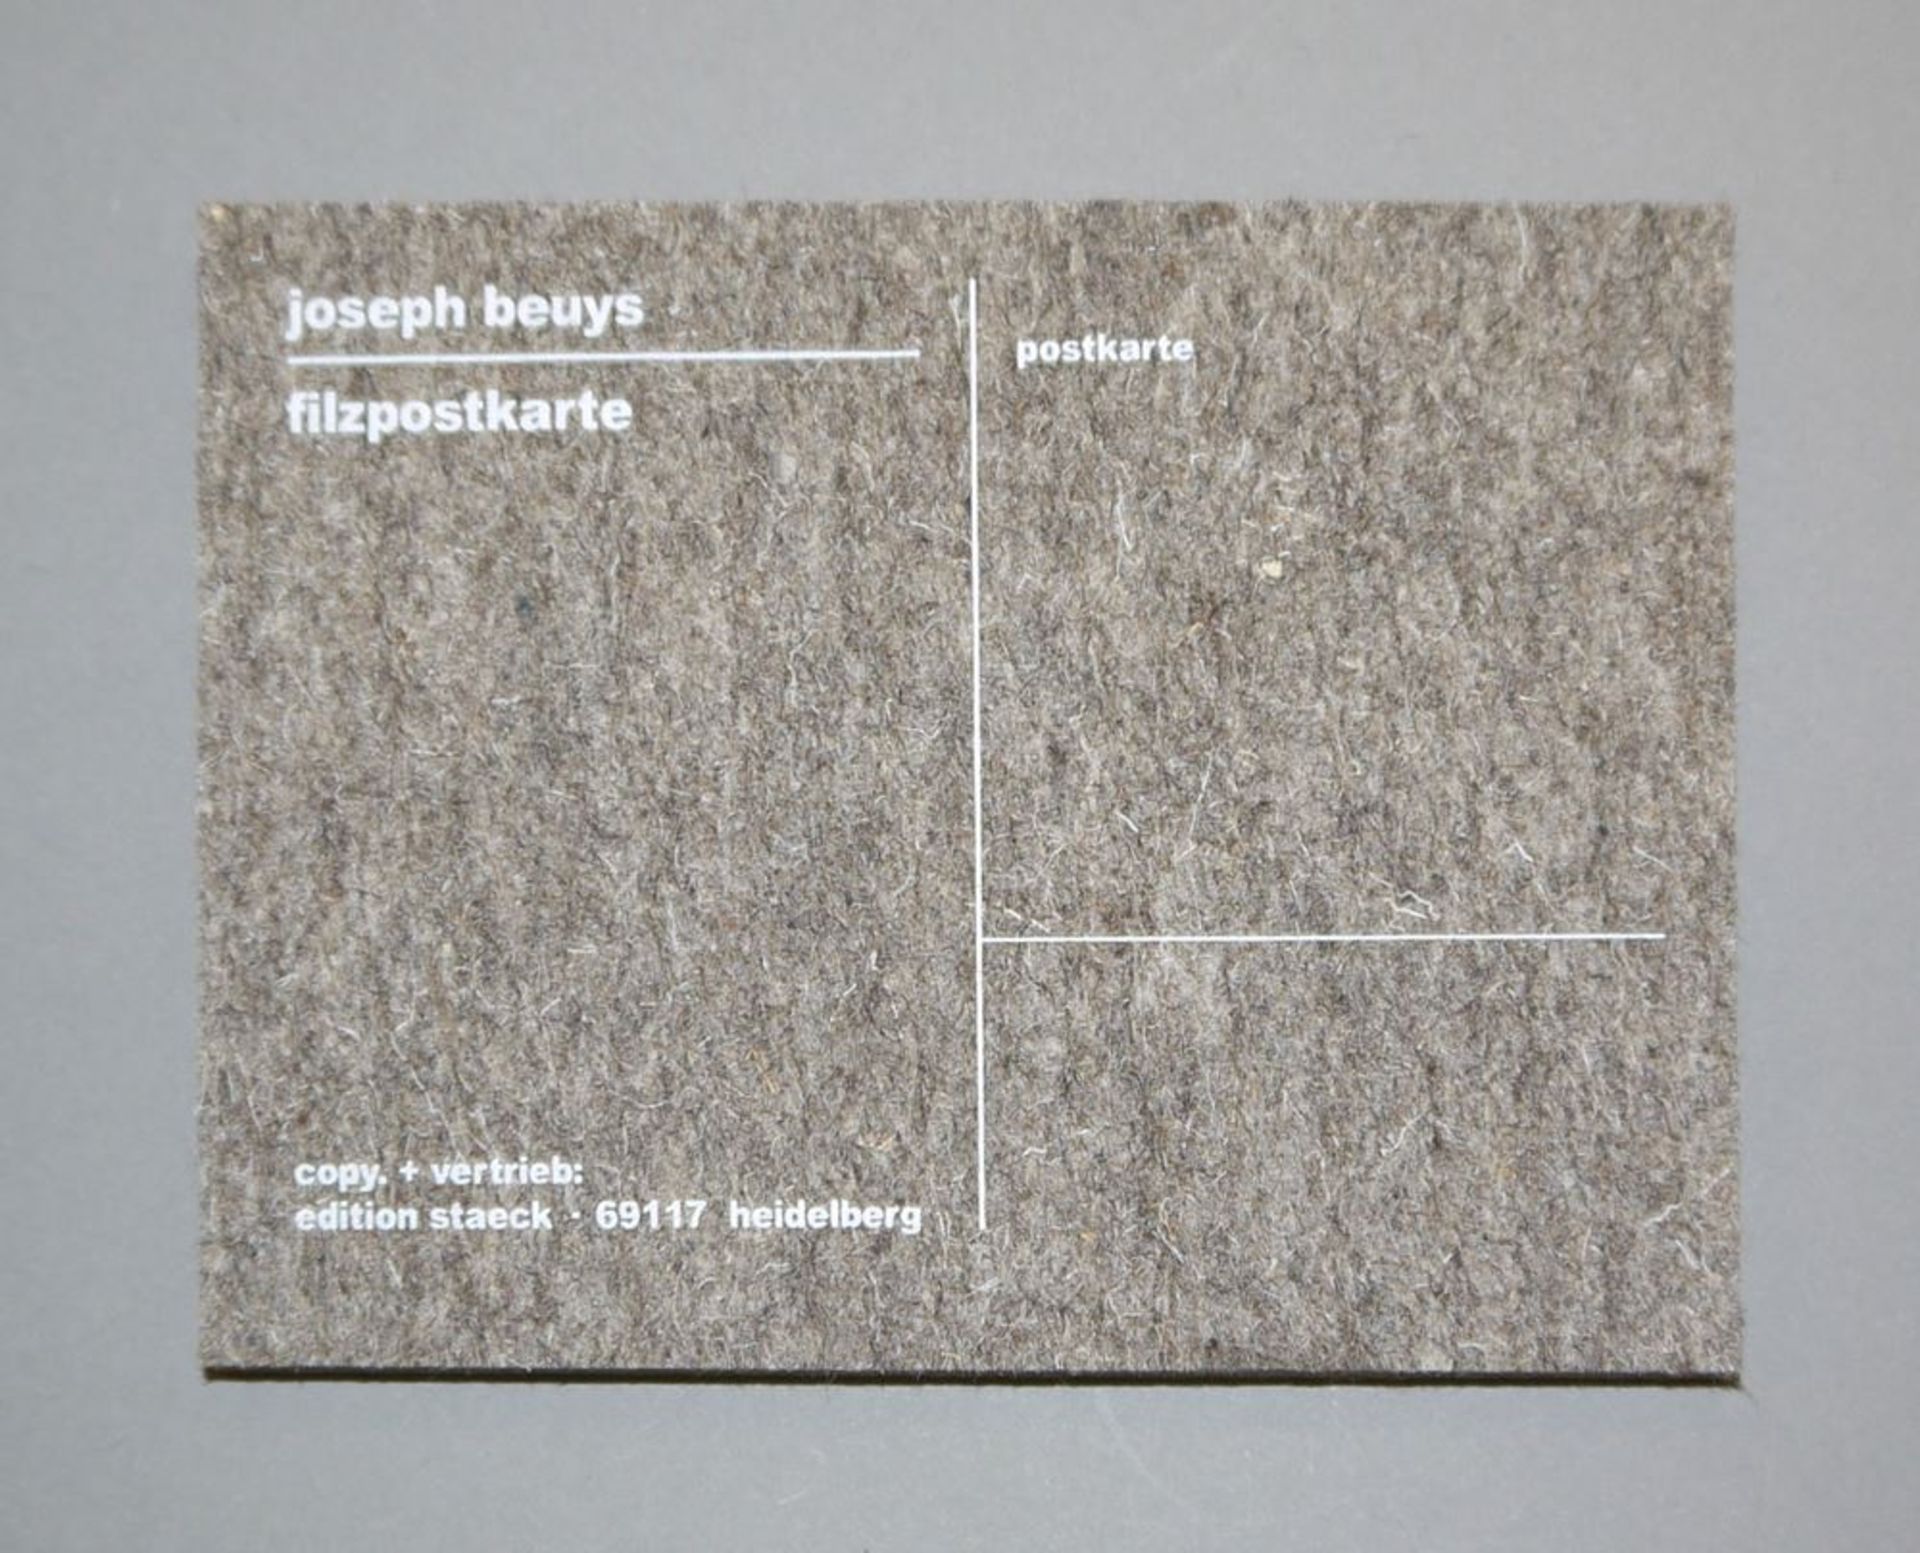 Joseph Beuys, 3 Tonnen-Edition, 1973-1985, Folie 24, dazu Filzpostkarte & 6 Postkarten, Edition Sta - Bild 3 aus 4